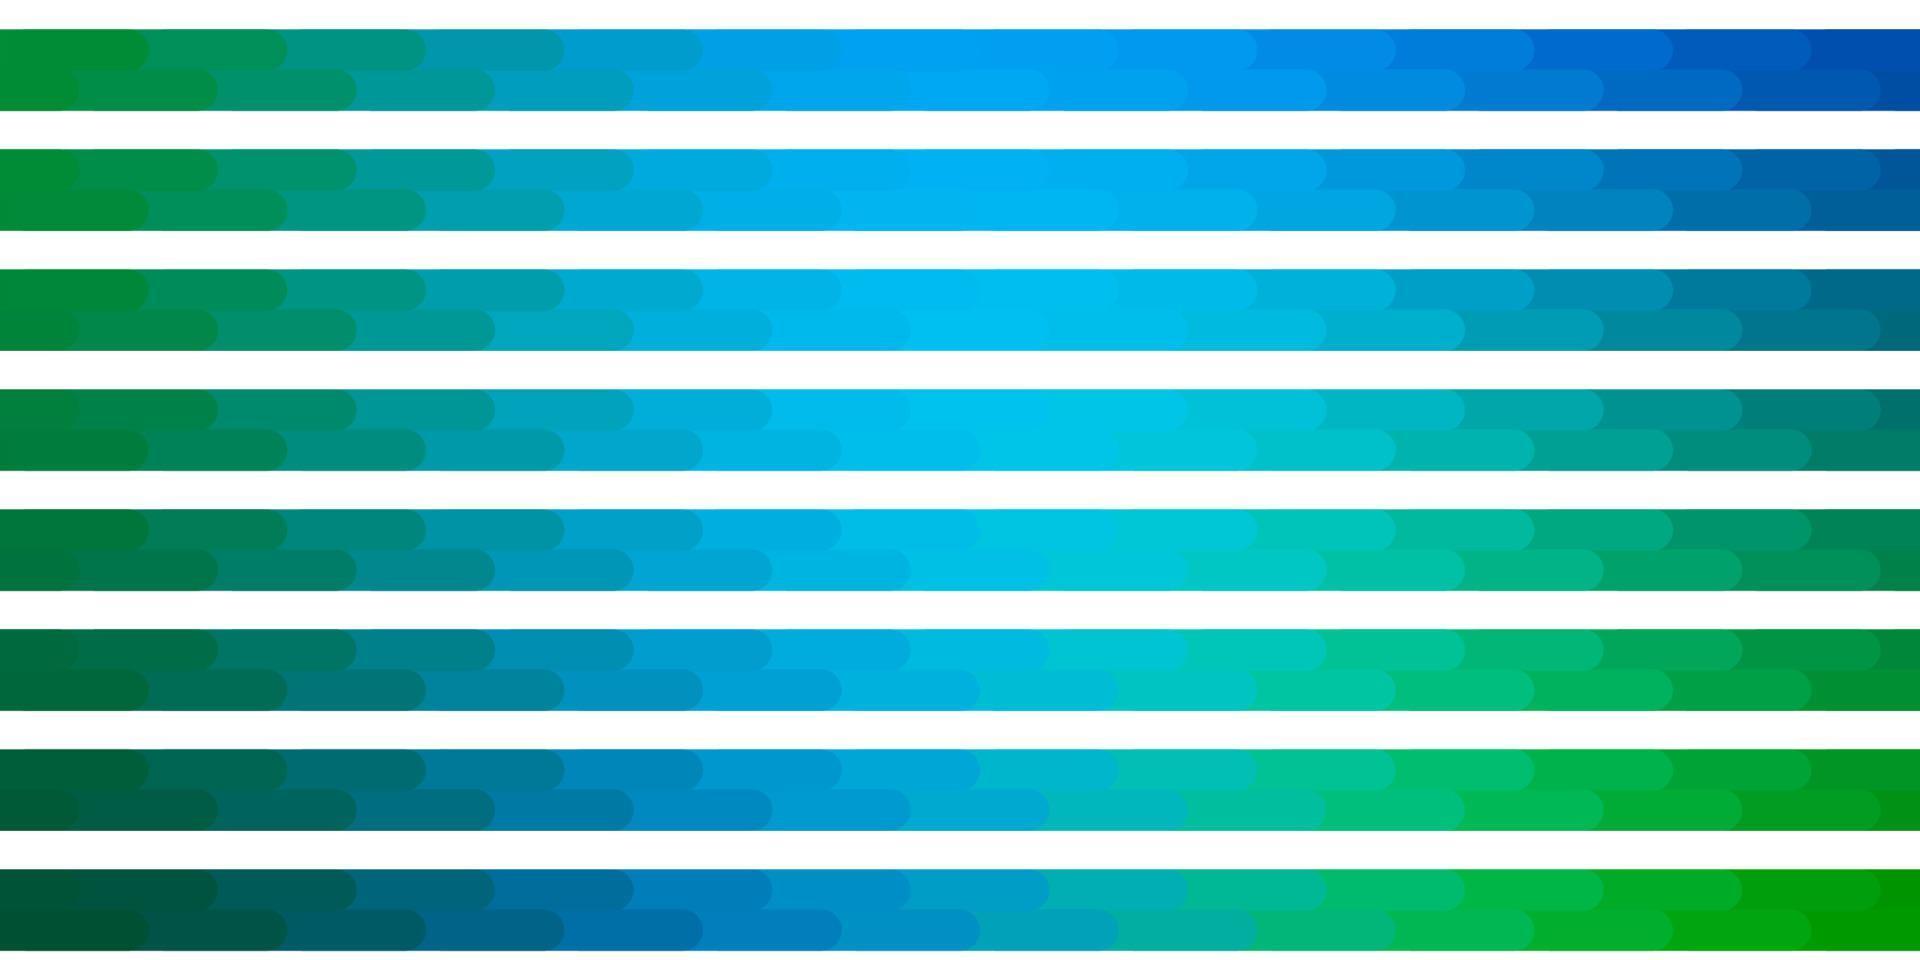 modèle vectoriel bleu clair, vert avec des lignes.